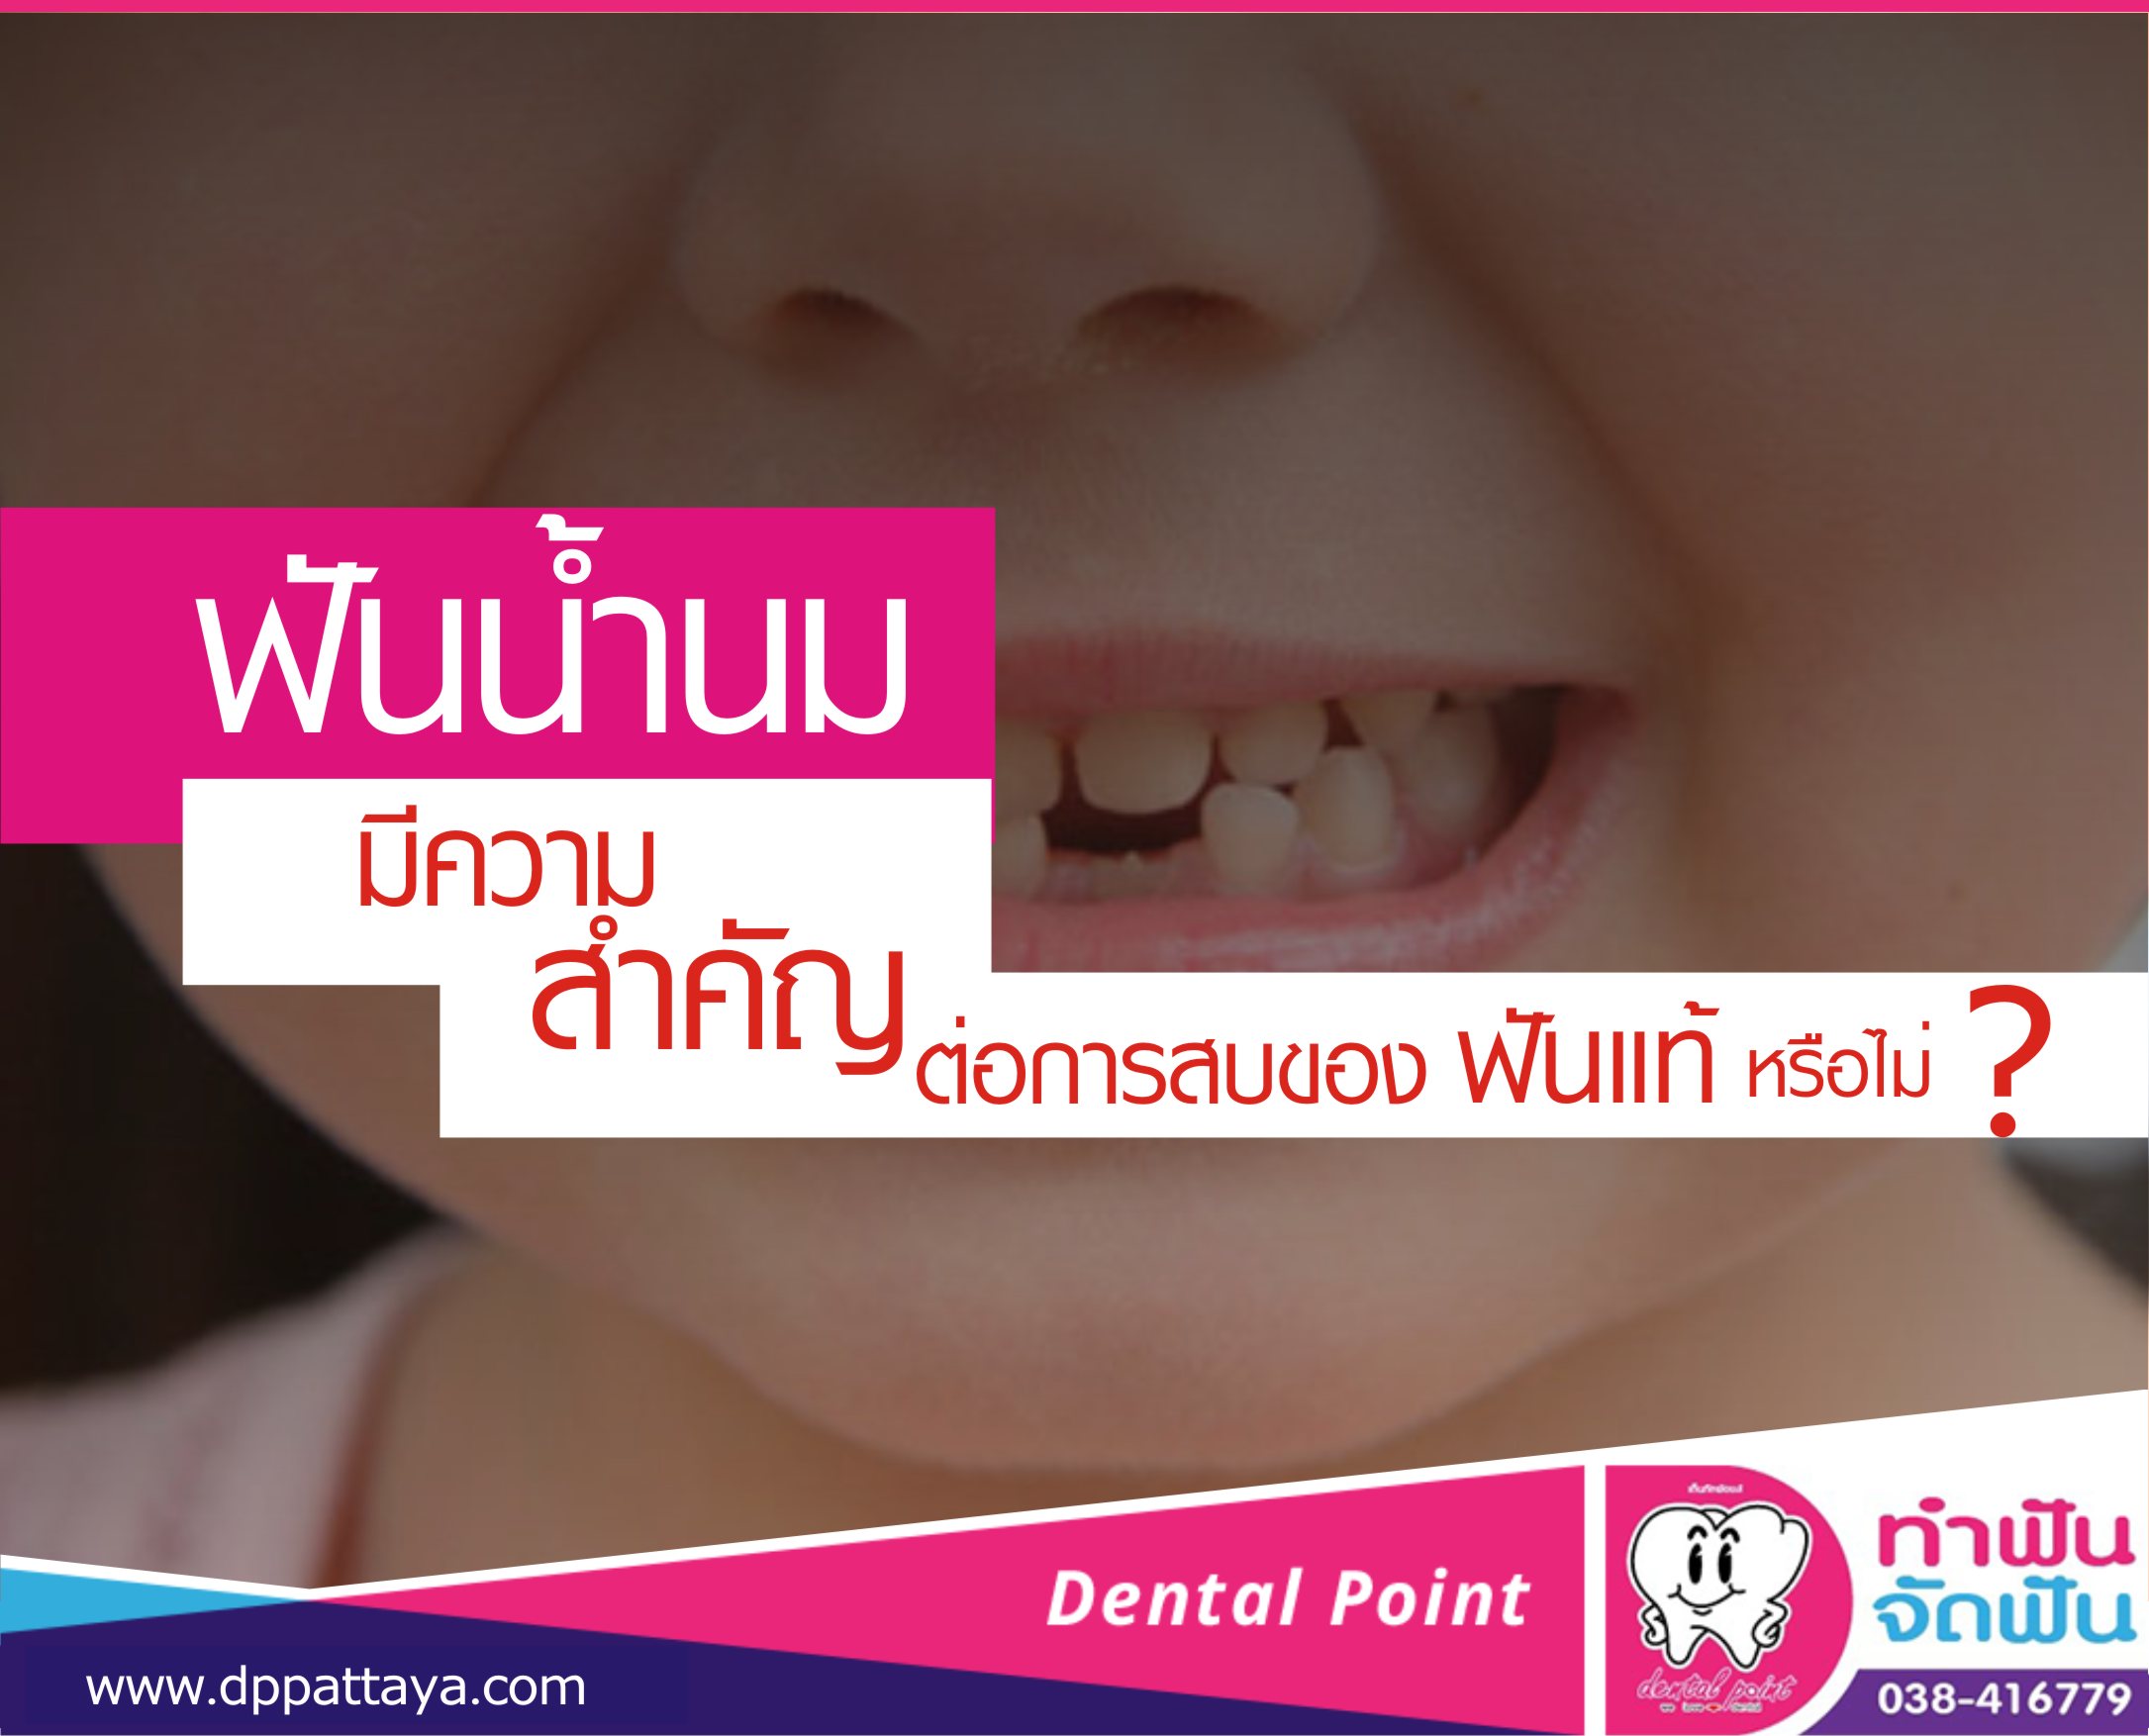 ฟันน้ำนม มีความสำคัญต่อการสบของฟันแท้